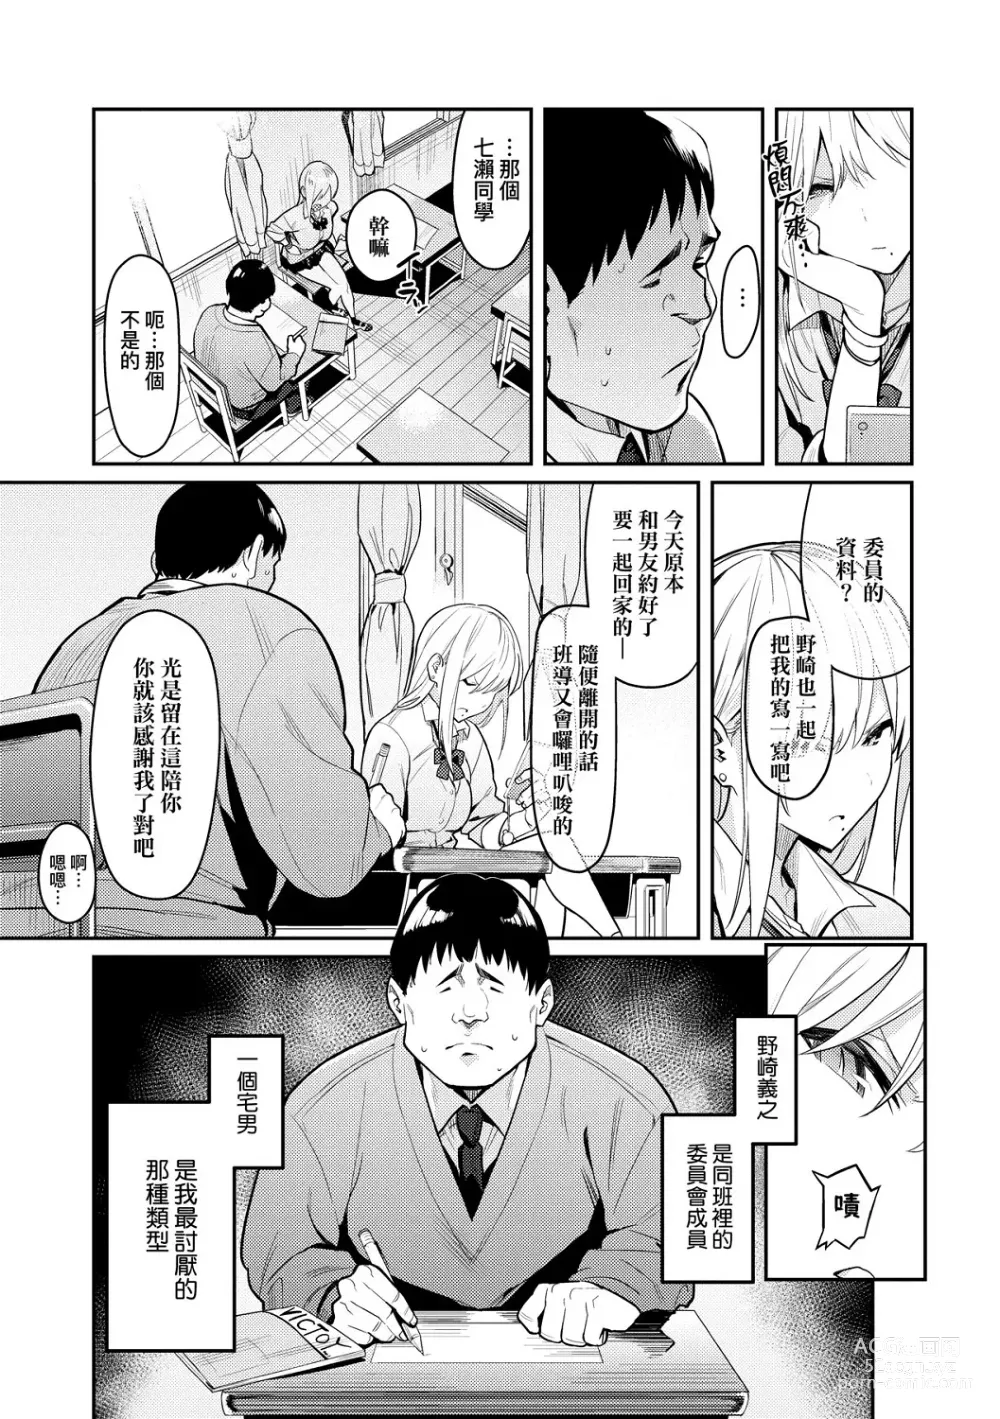 Page 7 of manga Seiyoku Tsuyo Tsuyo (decensored)